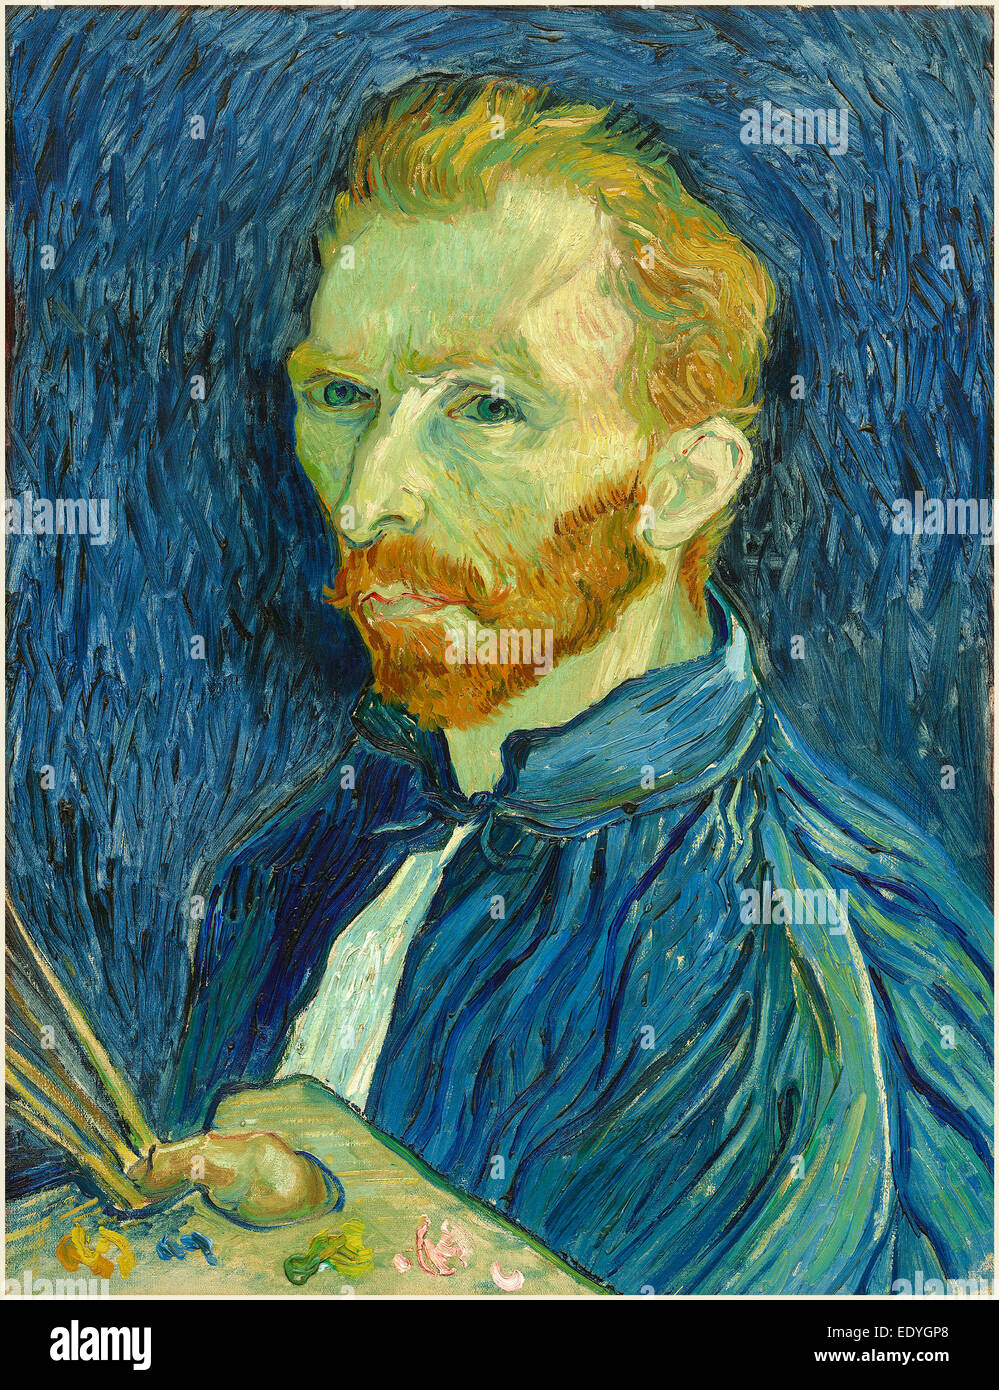 Vincent van Gogh, le néerlandais (1853-1890), Autoportrait, 1889, huile sur toile Banque D'Images